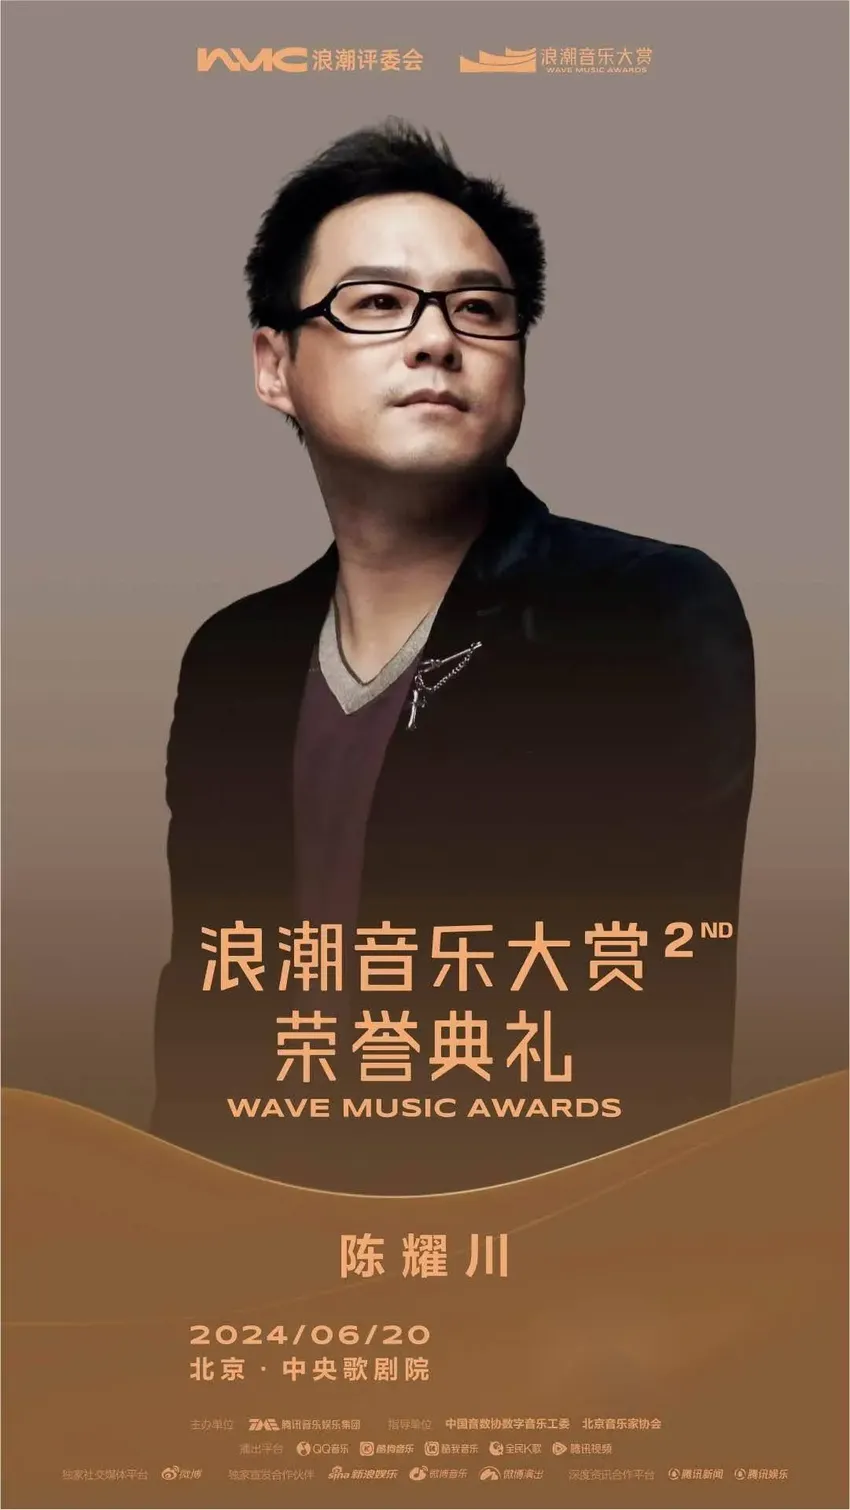 第二届浪潮音乐大赏即将在北京举办 三大亮点抢先看